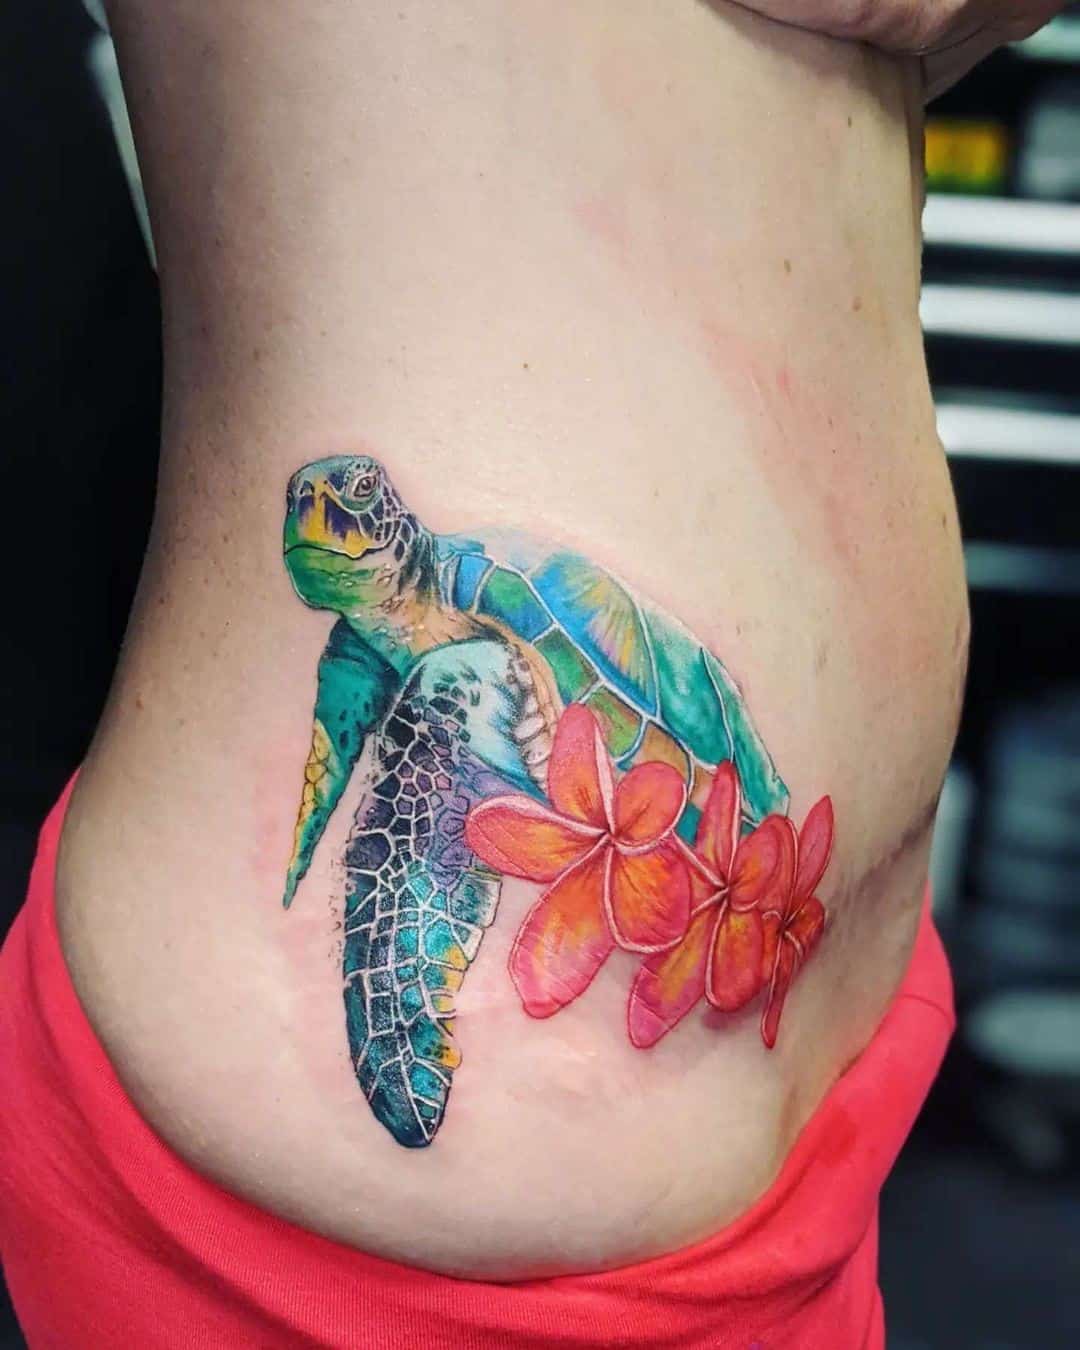 Turtle Tattoos And Turtle Tattoo MeaningsTurtle Tattoo Designs And Turtle  Tattoo Ideas  HubPages